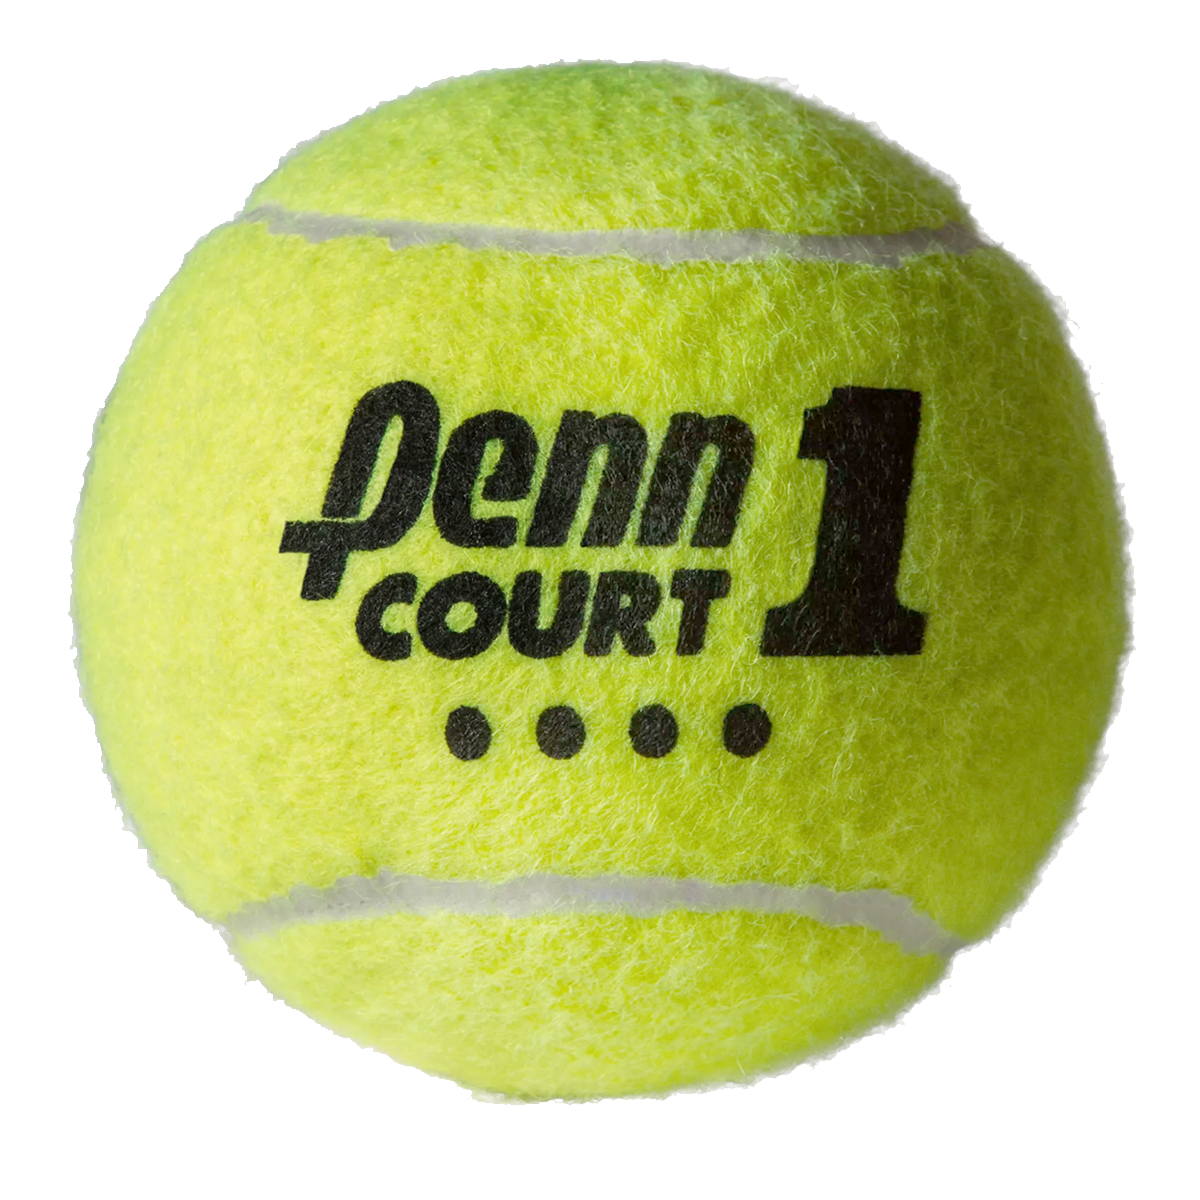 Court 1 Tennis Balls alternate view